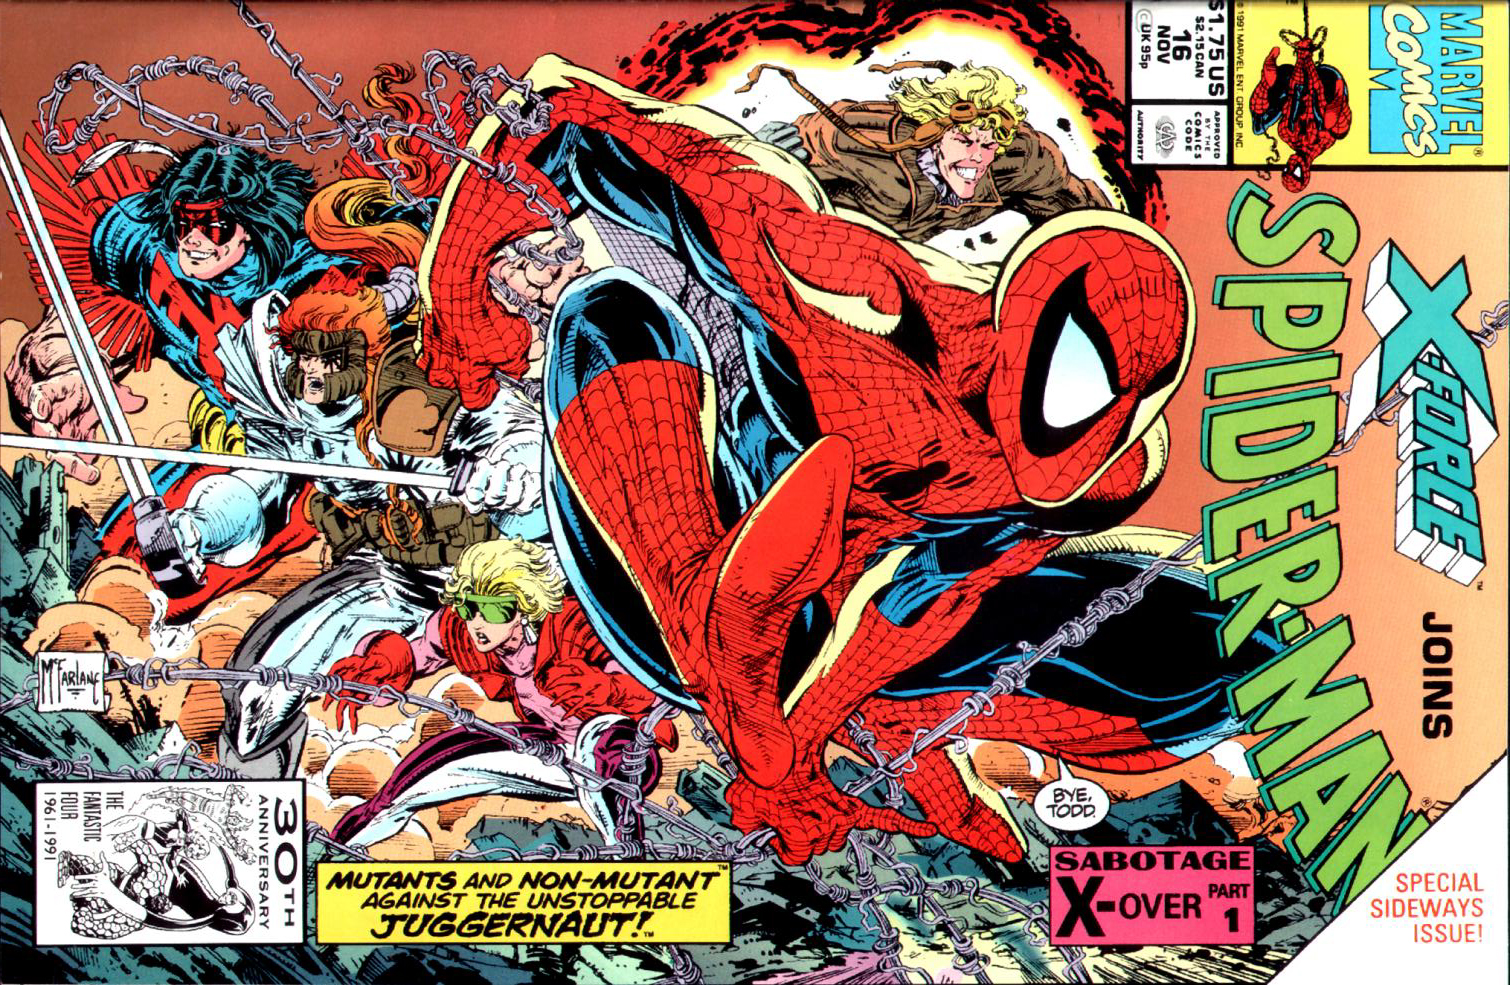 Read online Spider-Man (1990) comic -  Issue #16 - The Sabotage Part 1 - 1